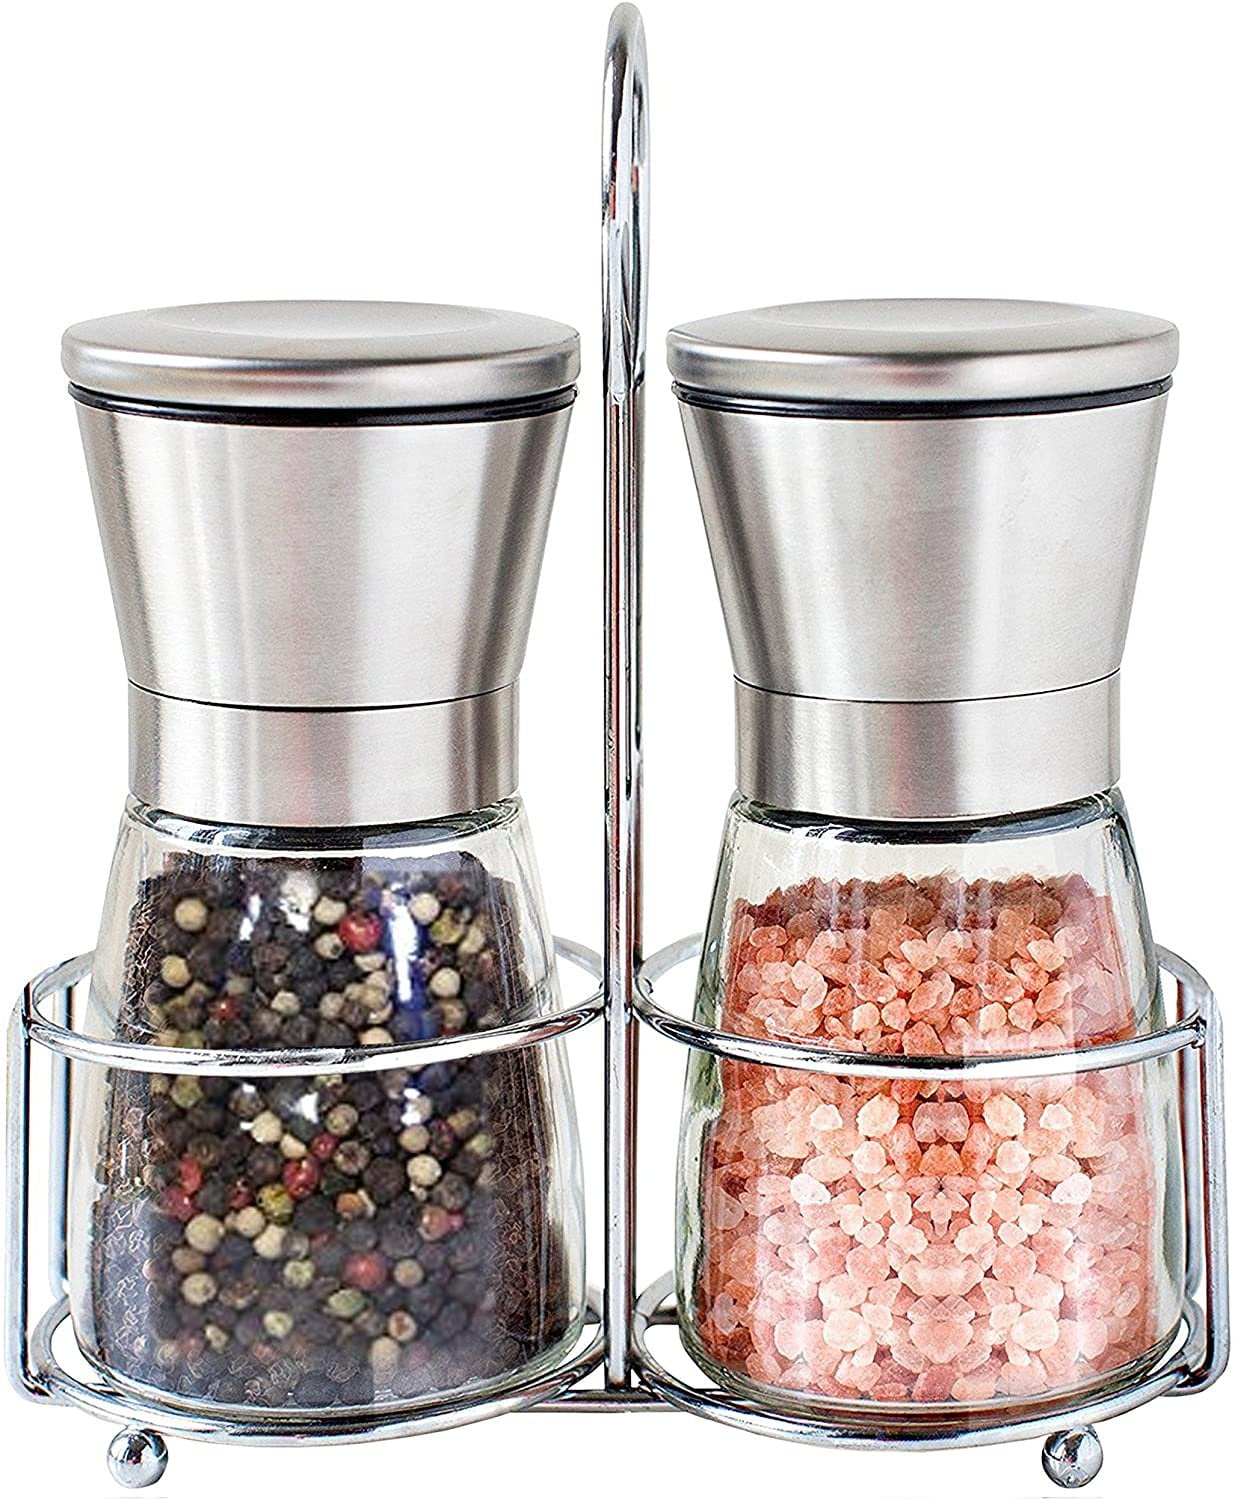 Myle Salt and Pepper Grinder Set with Stand Small Refillable Stainless  Steel Pepper Grinder Mini Adjustable Ceramic Grinder Manual Salt Grinders